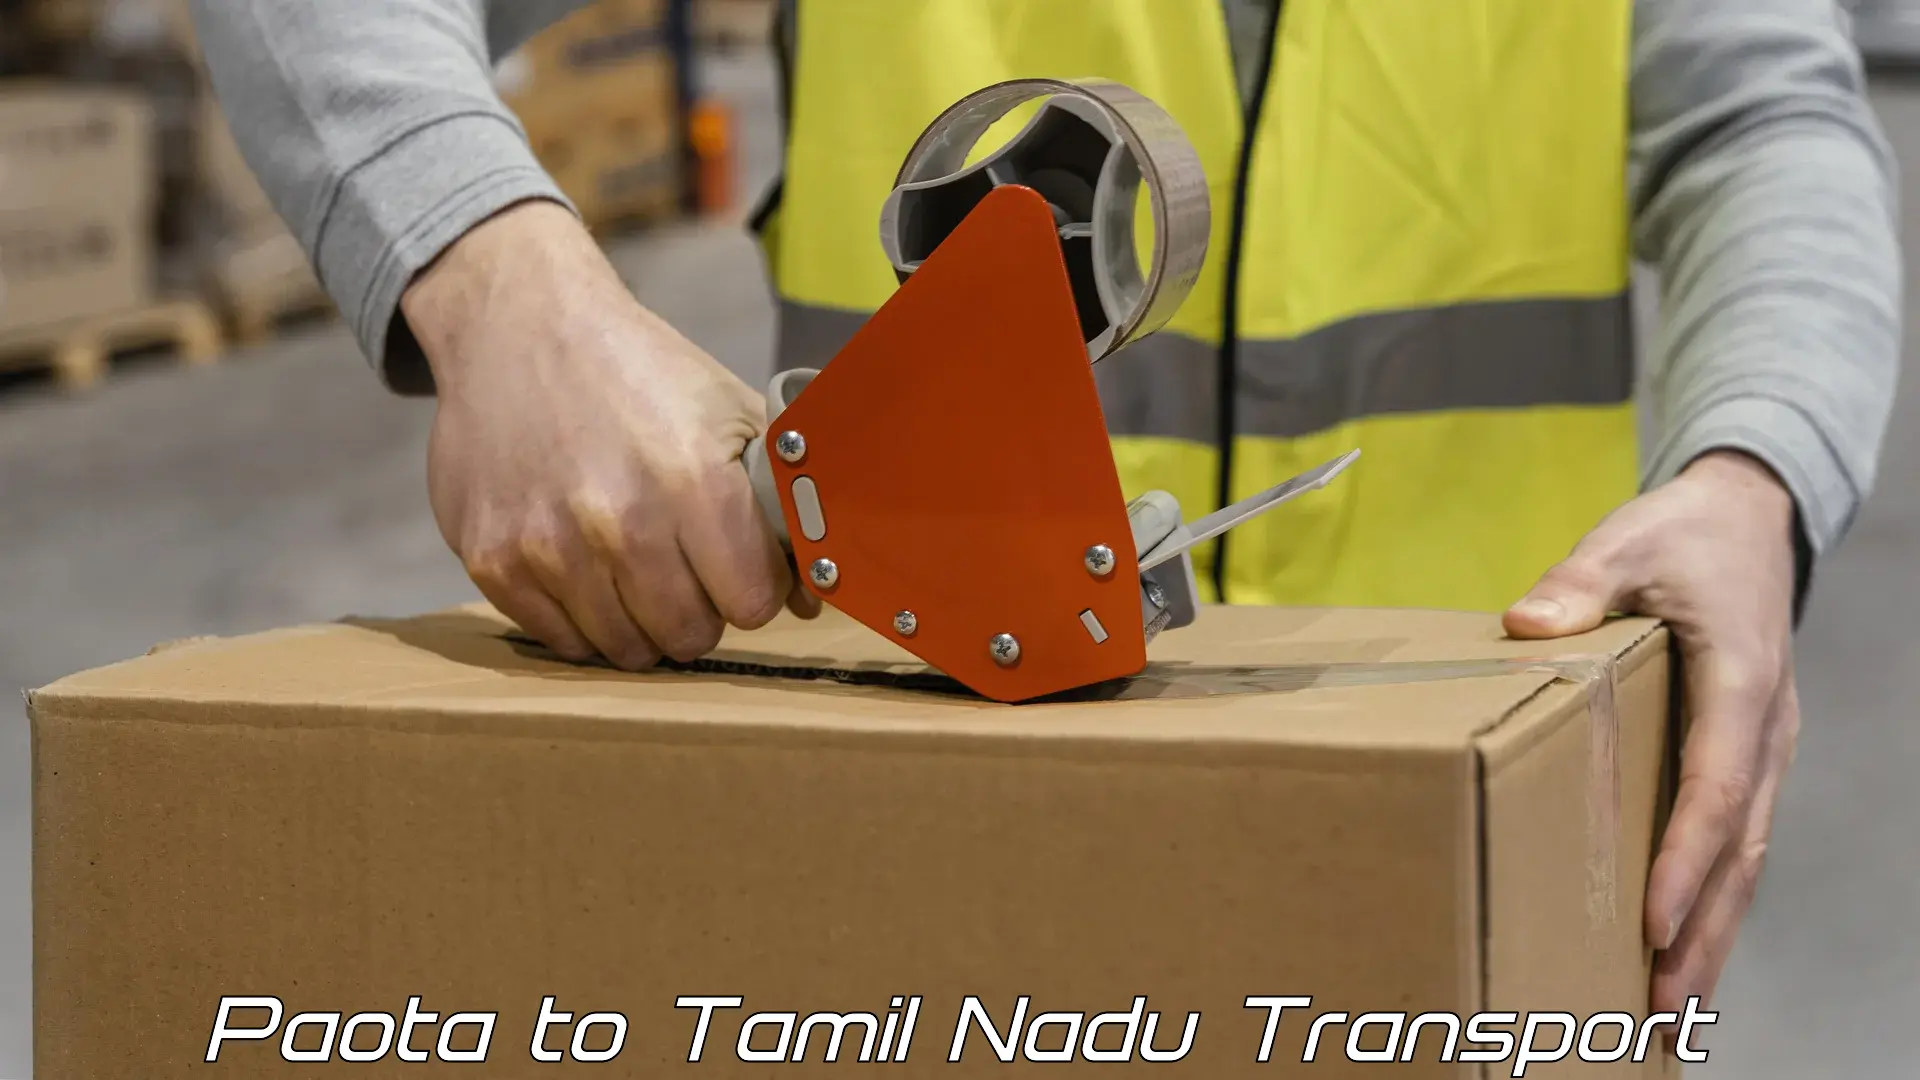 Container transportation services Paota to Thiruvadanai